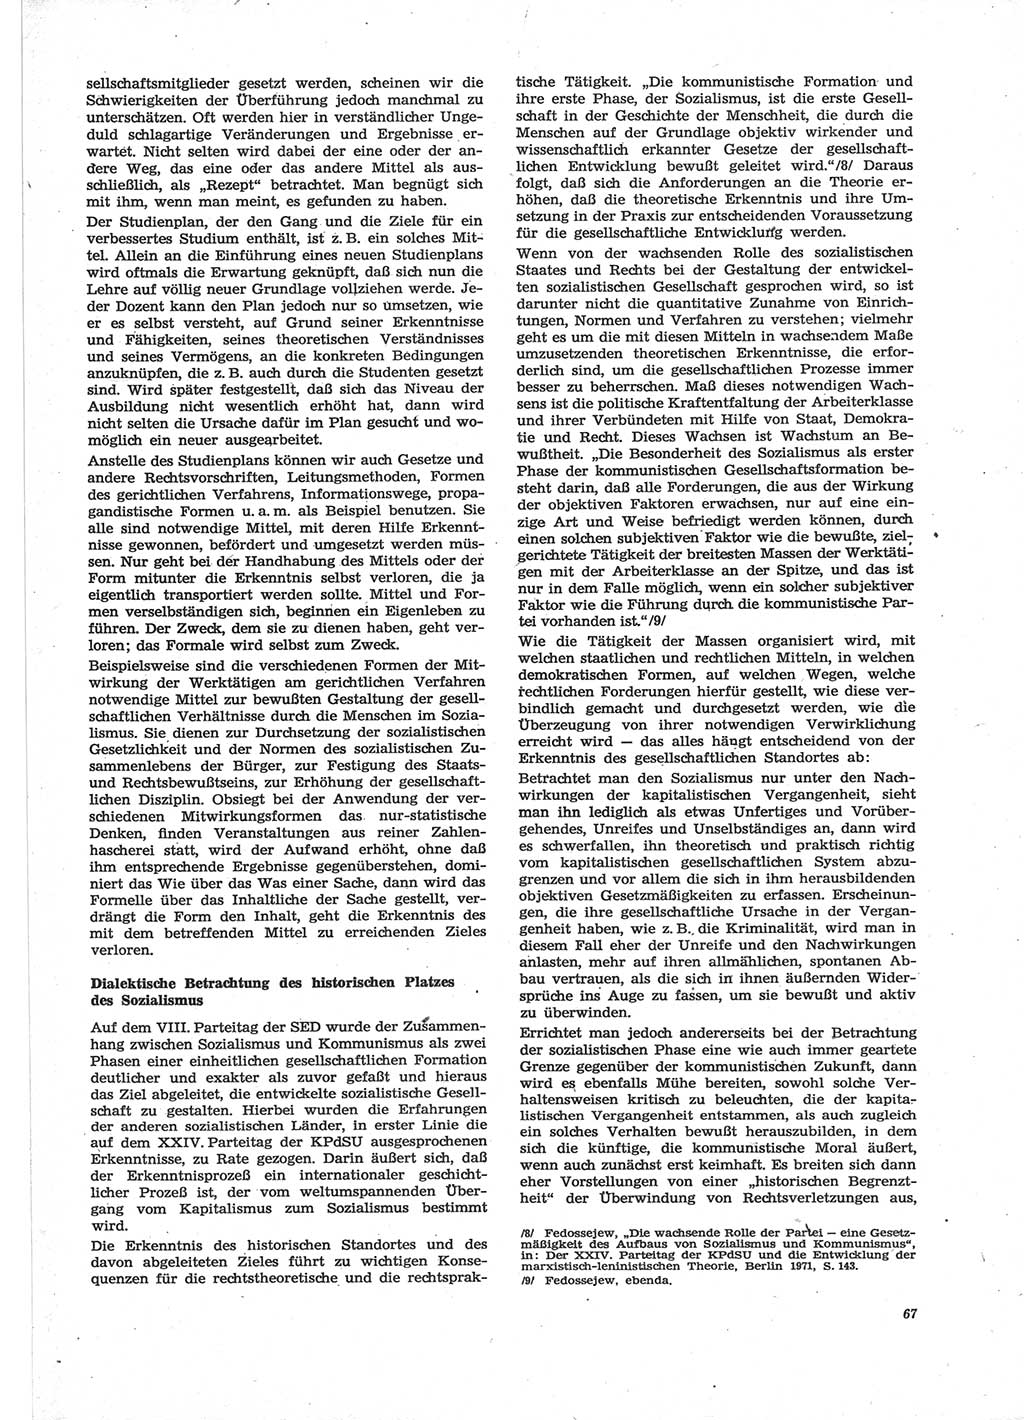 Neue Justiz (NJ), Zeitschrift für Recht und Rechtswissenschaft [Deutsche Demokratische Republik (DDR)], 28. Jahrgang 1974, Seite 67 (NJ DDR 1974, S. 67)